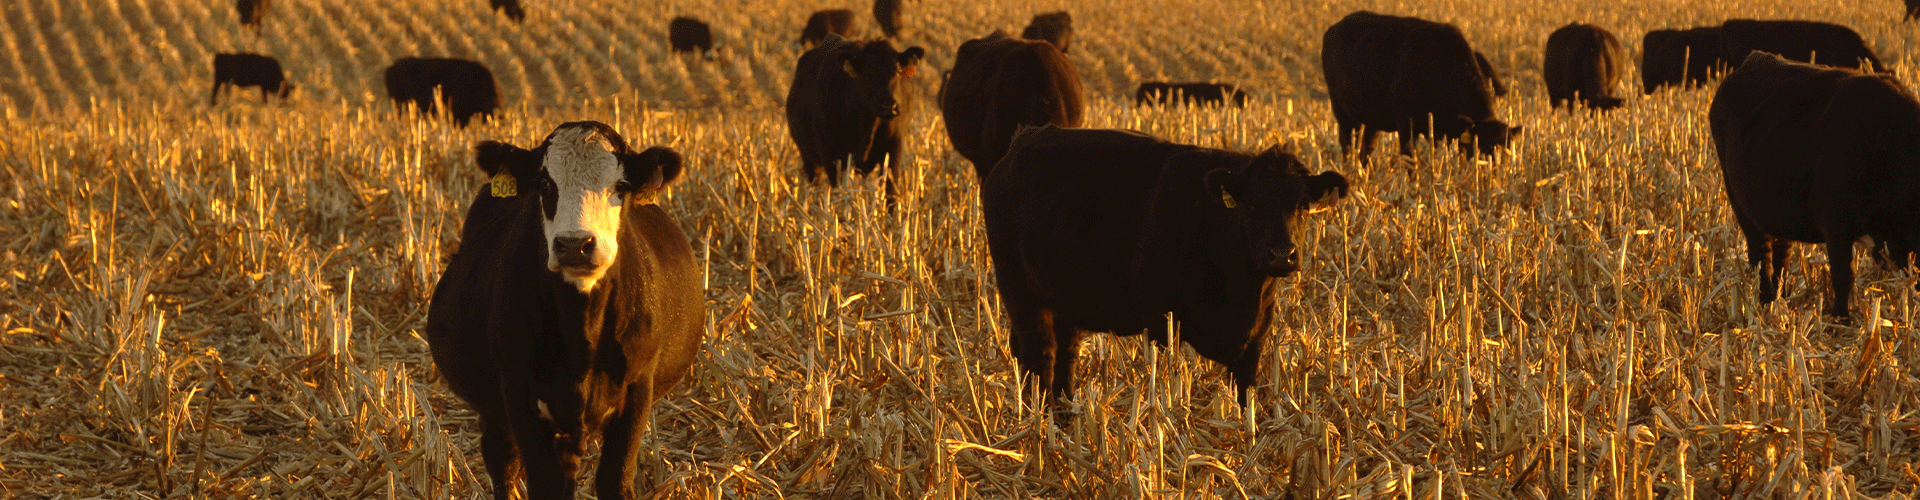 Beef cattle grazing in a mowed down corn field